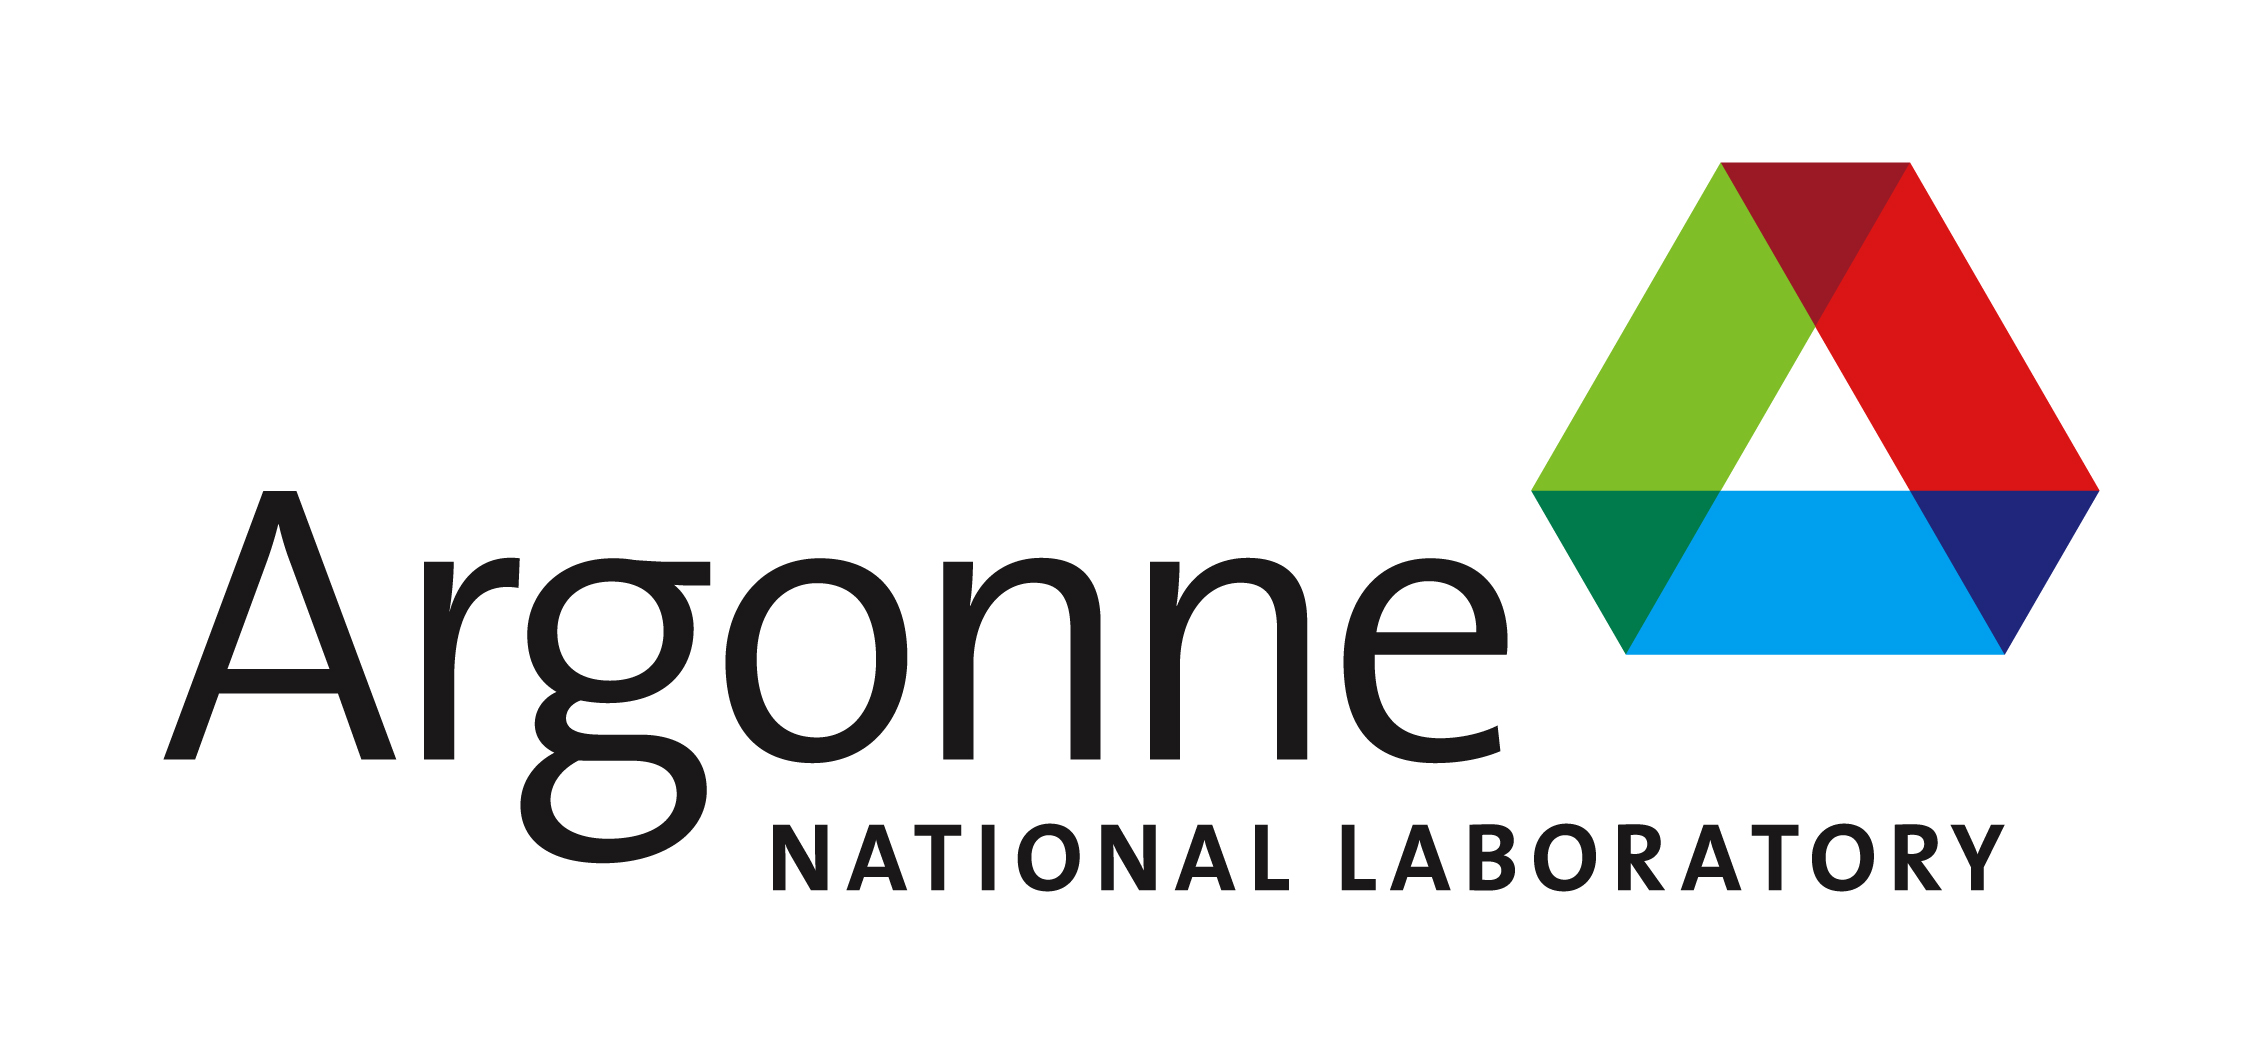 PROJEKTPROFIL: Argonne National Laboratory (2015) | Institutionen för energi